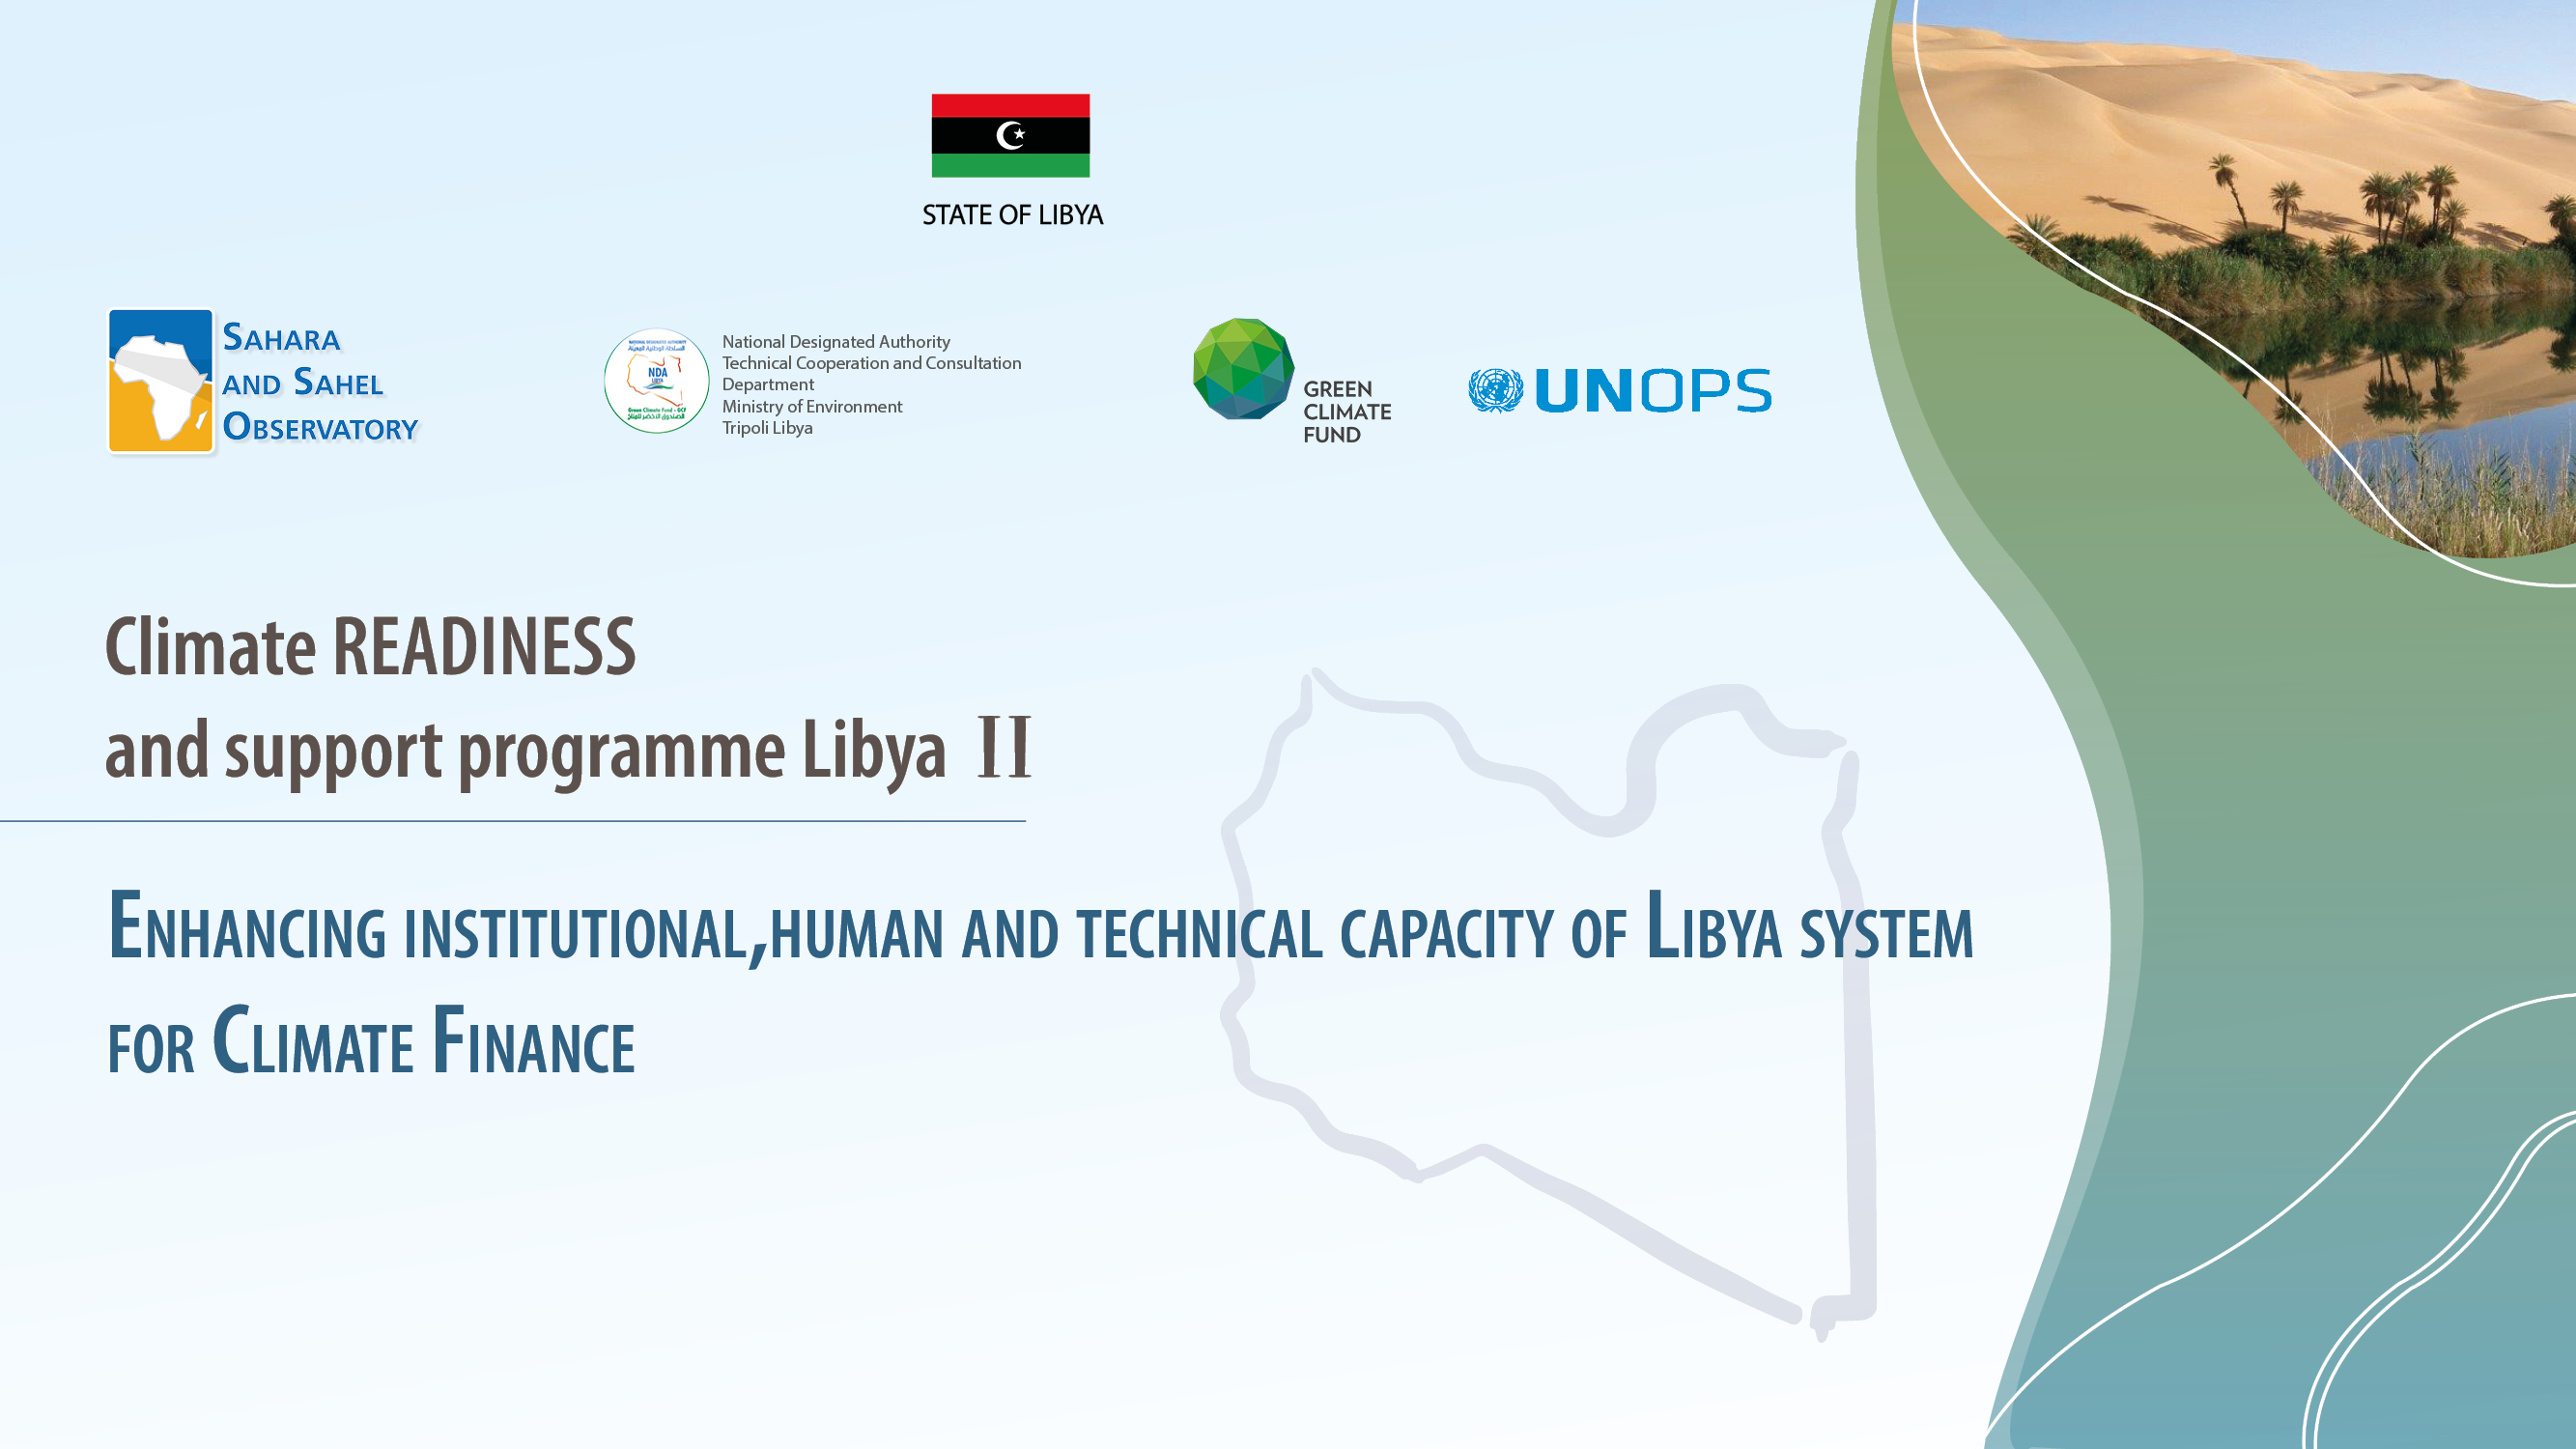  READINESS-LIBYE II | Atelier de formation et de renforcement des capacités de l'Autorité Nationale Désignée (AND) de la Libye dans le domaine du changement climatique et du financement climatique